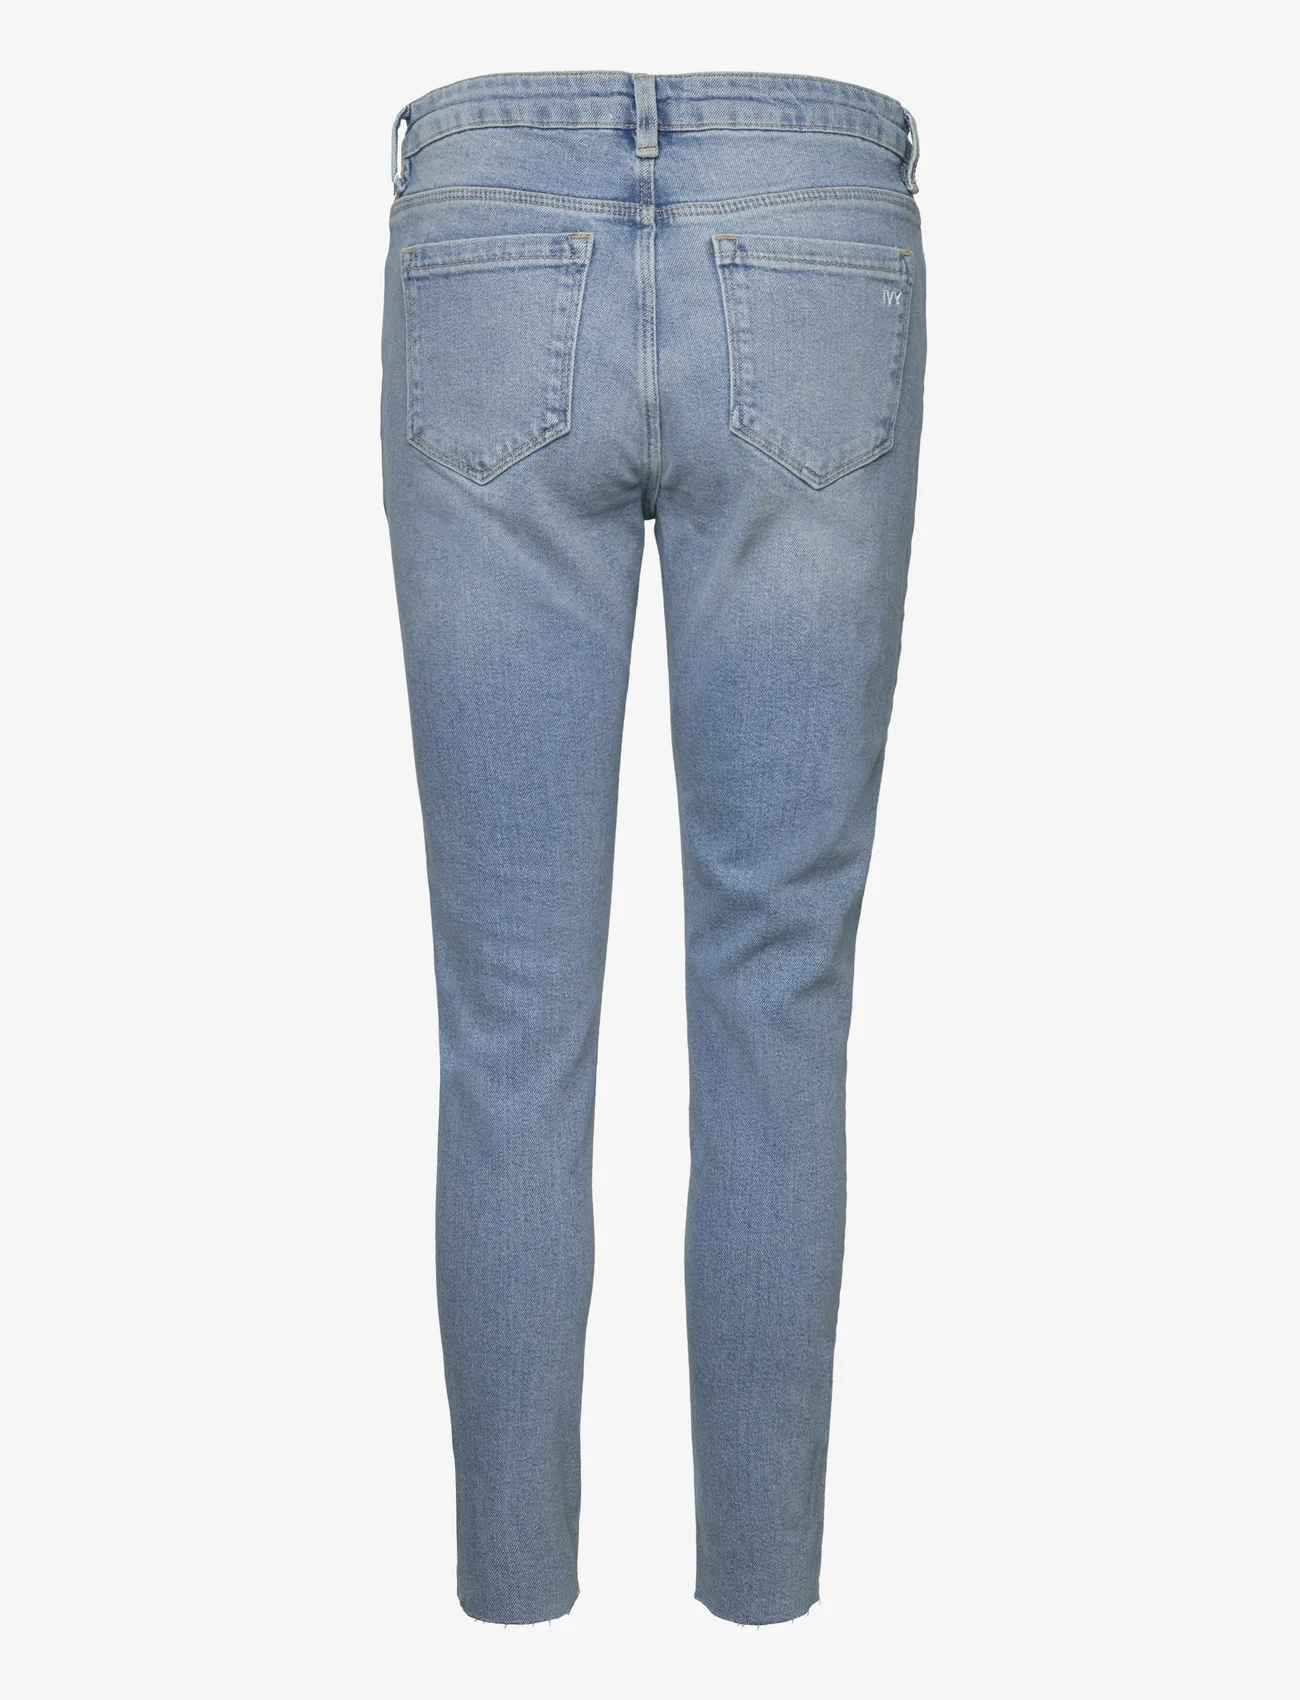 IVY Copenhagen - IVY-Alexa Earth Jeans Wash Miami - aptemtos kelnės - denim blue - 1